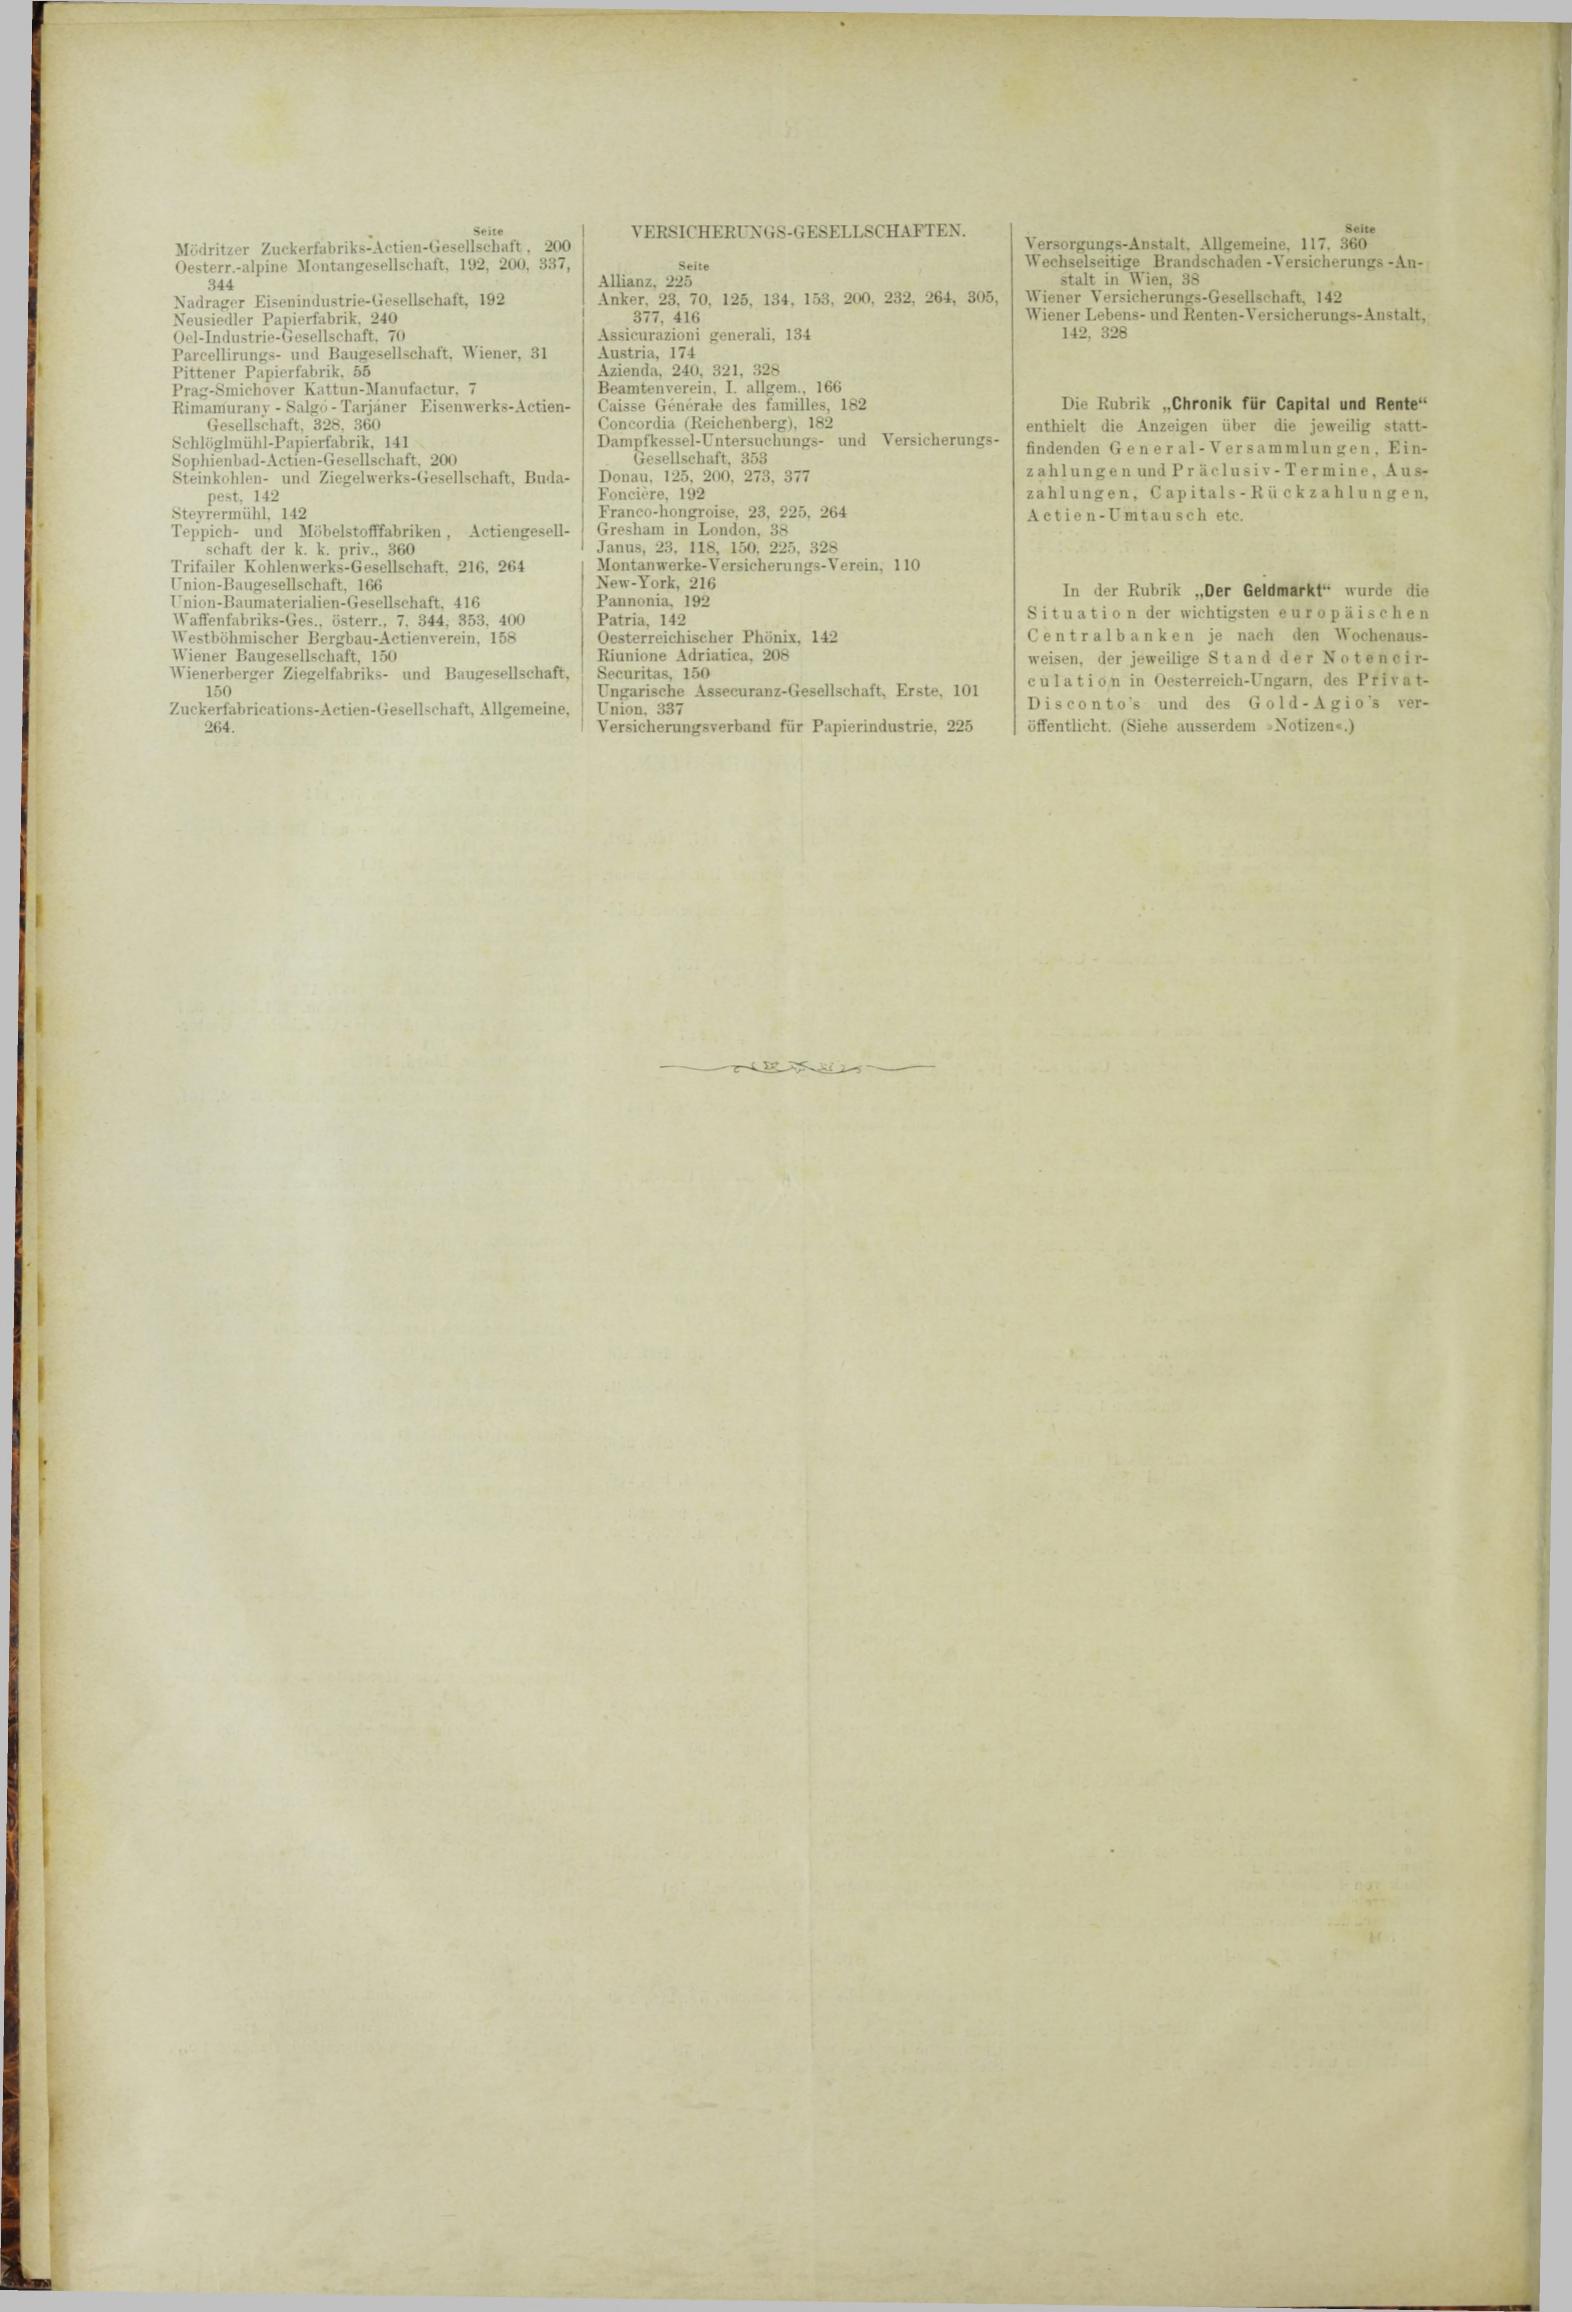 Der Tresor 28.06.1883 - Seite 12